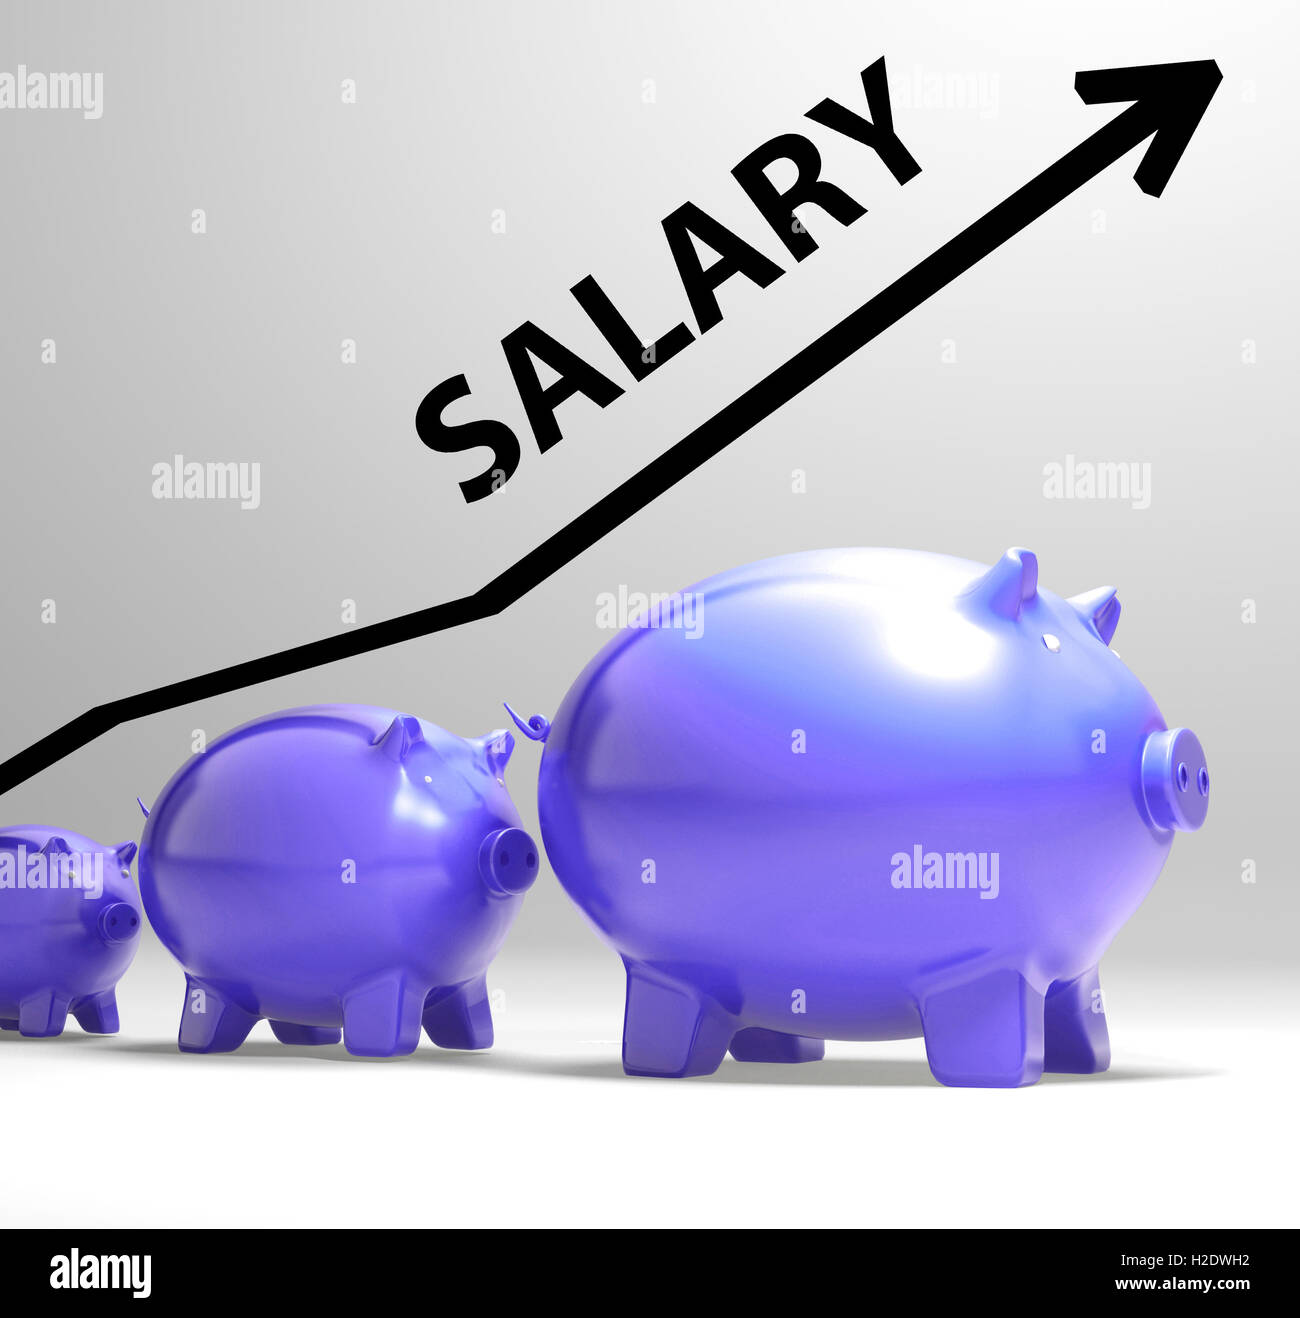 La flecha indica el sueldo aumento salarial para los trabajadores Foto de stock